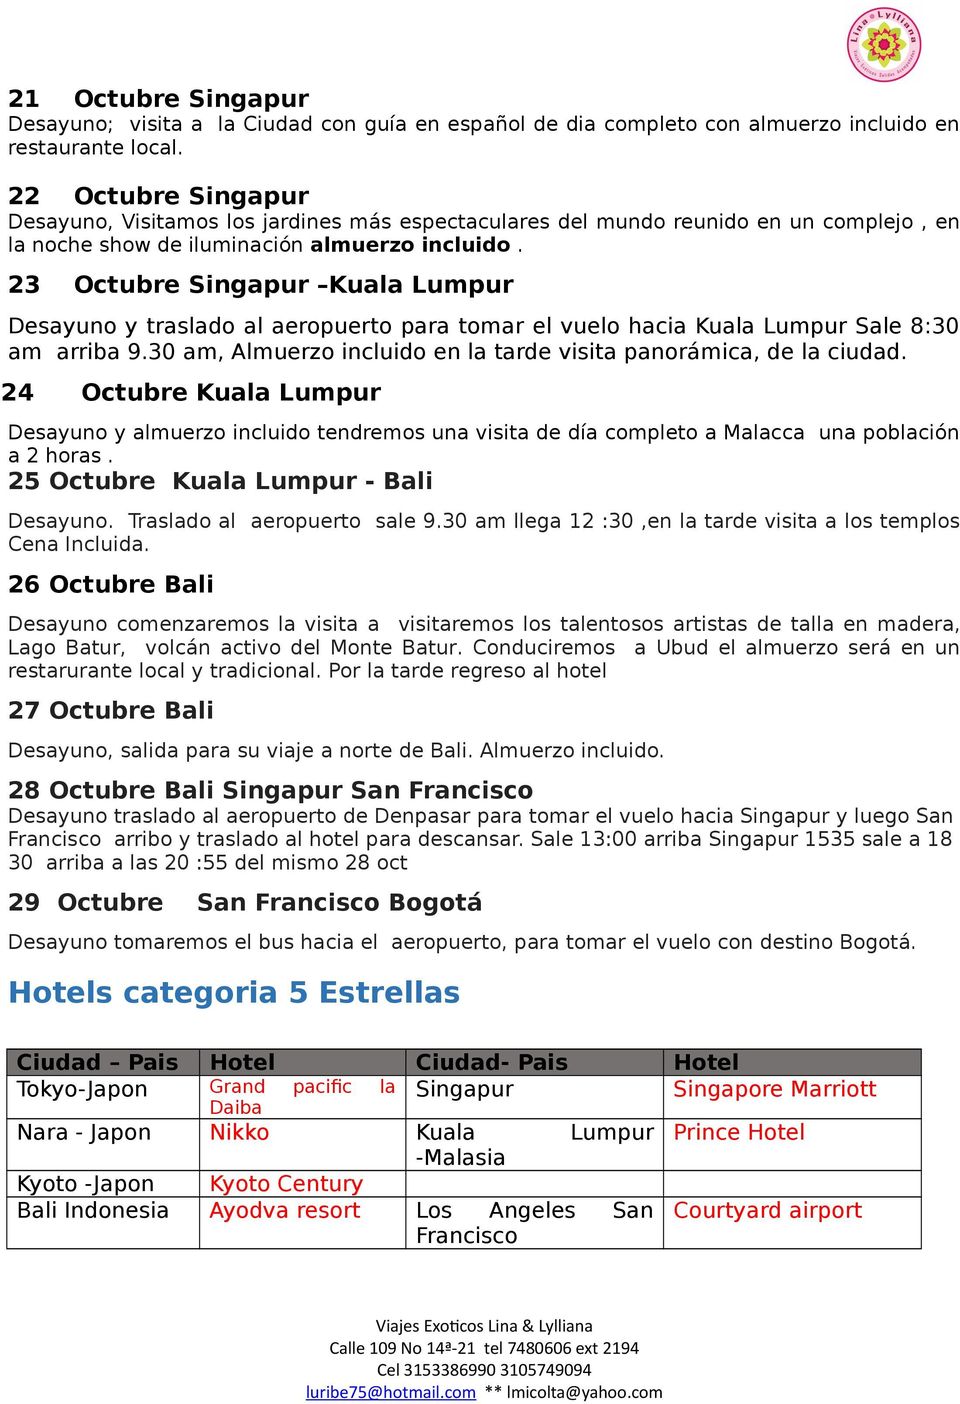 23 Octubre Singapur Kuala Lumpur Desayuno y traslado al aeropuerto para tomar el vuelo hacia Kuala Lumpur Sale 8:30 am arriba 9.30 am, Almuerzo incluido en la tarde visita panorámica, de la ciudad.